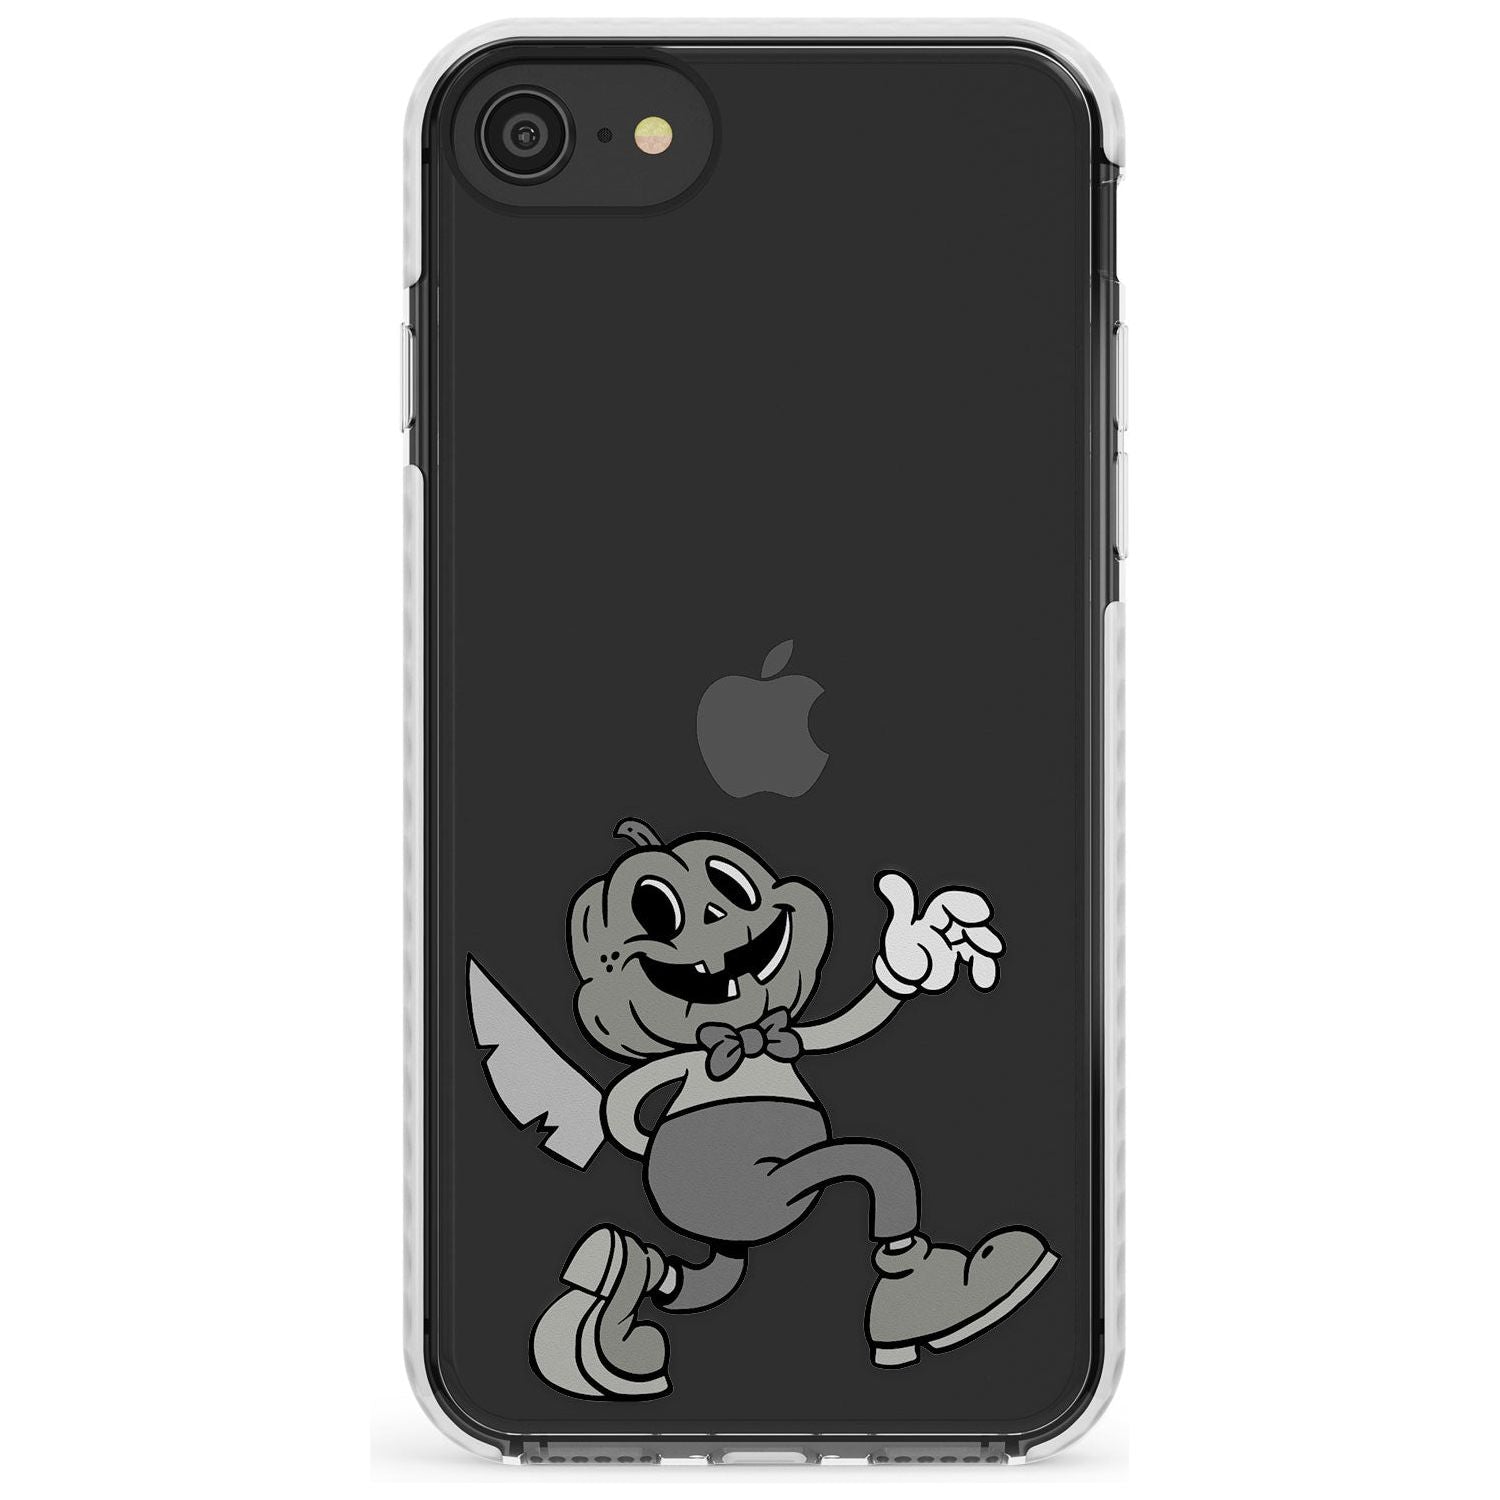 Jack o' slasher Impact Phone Case for iPhone SE 8 7 Plus